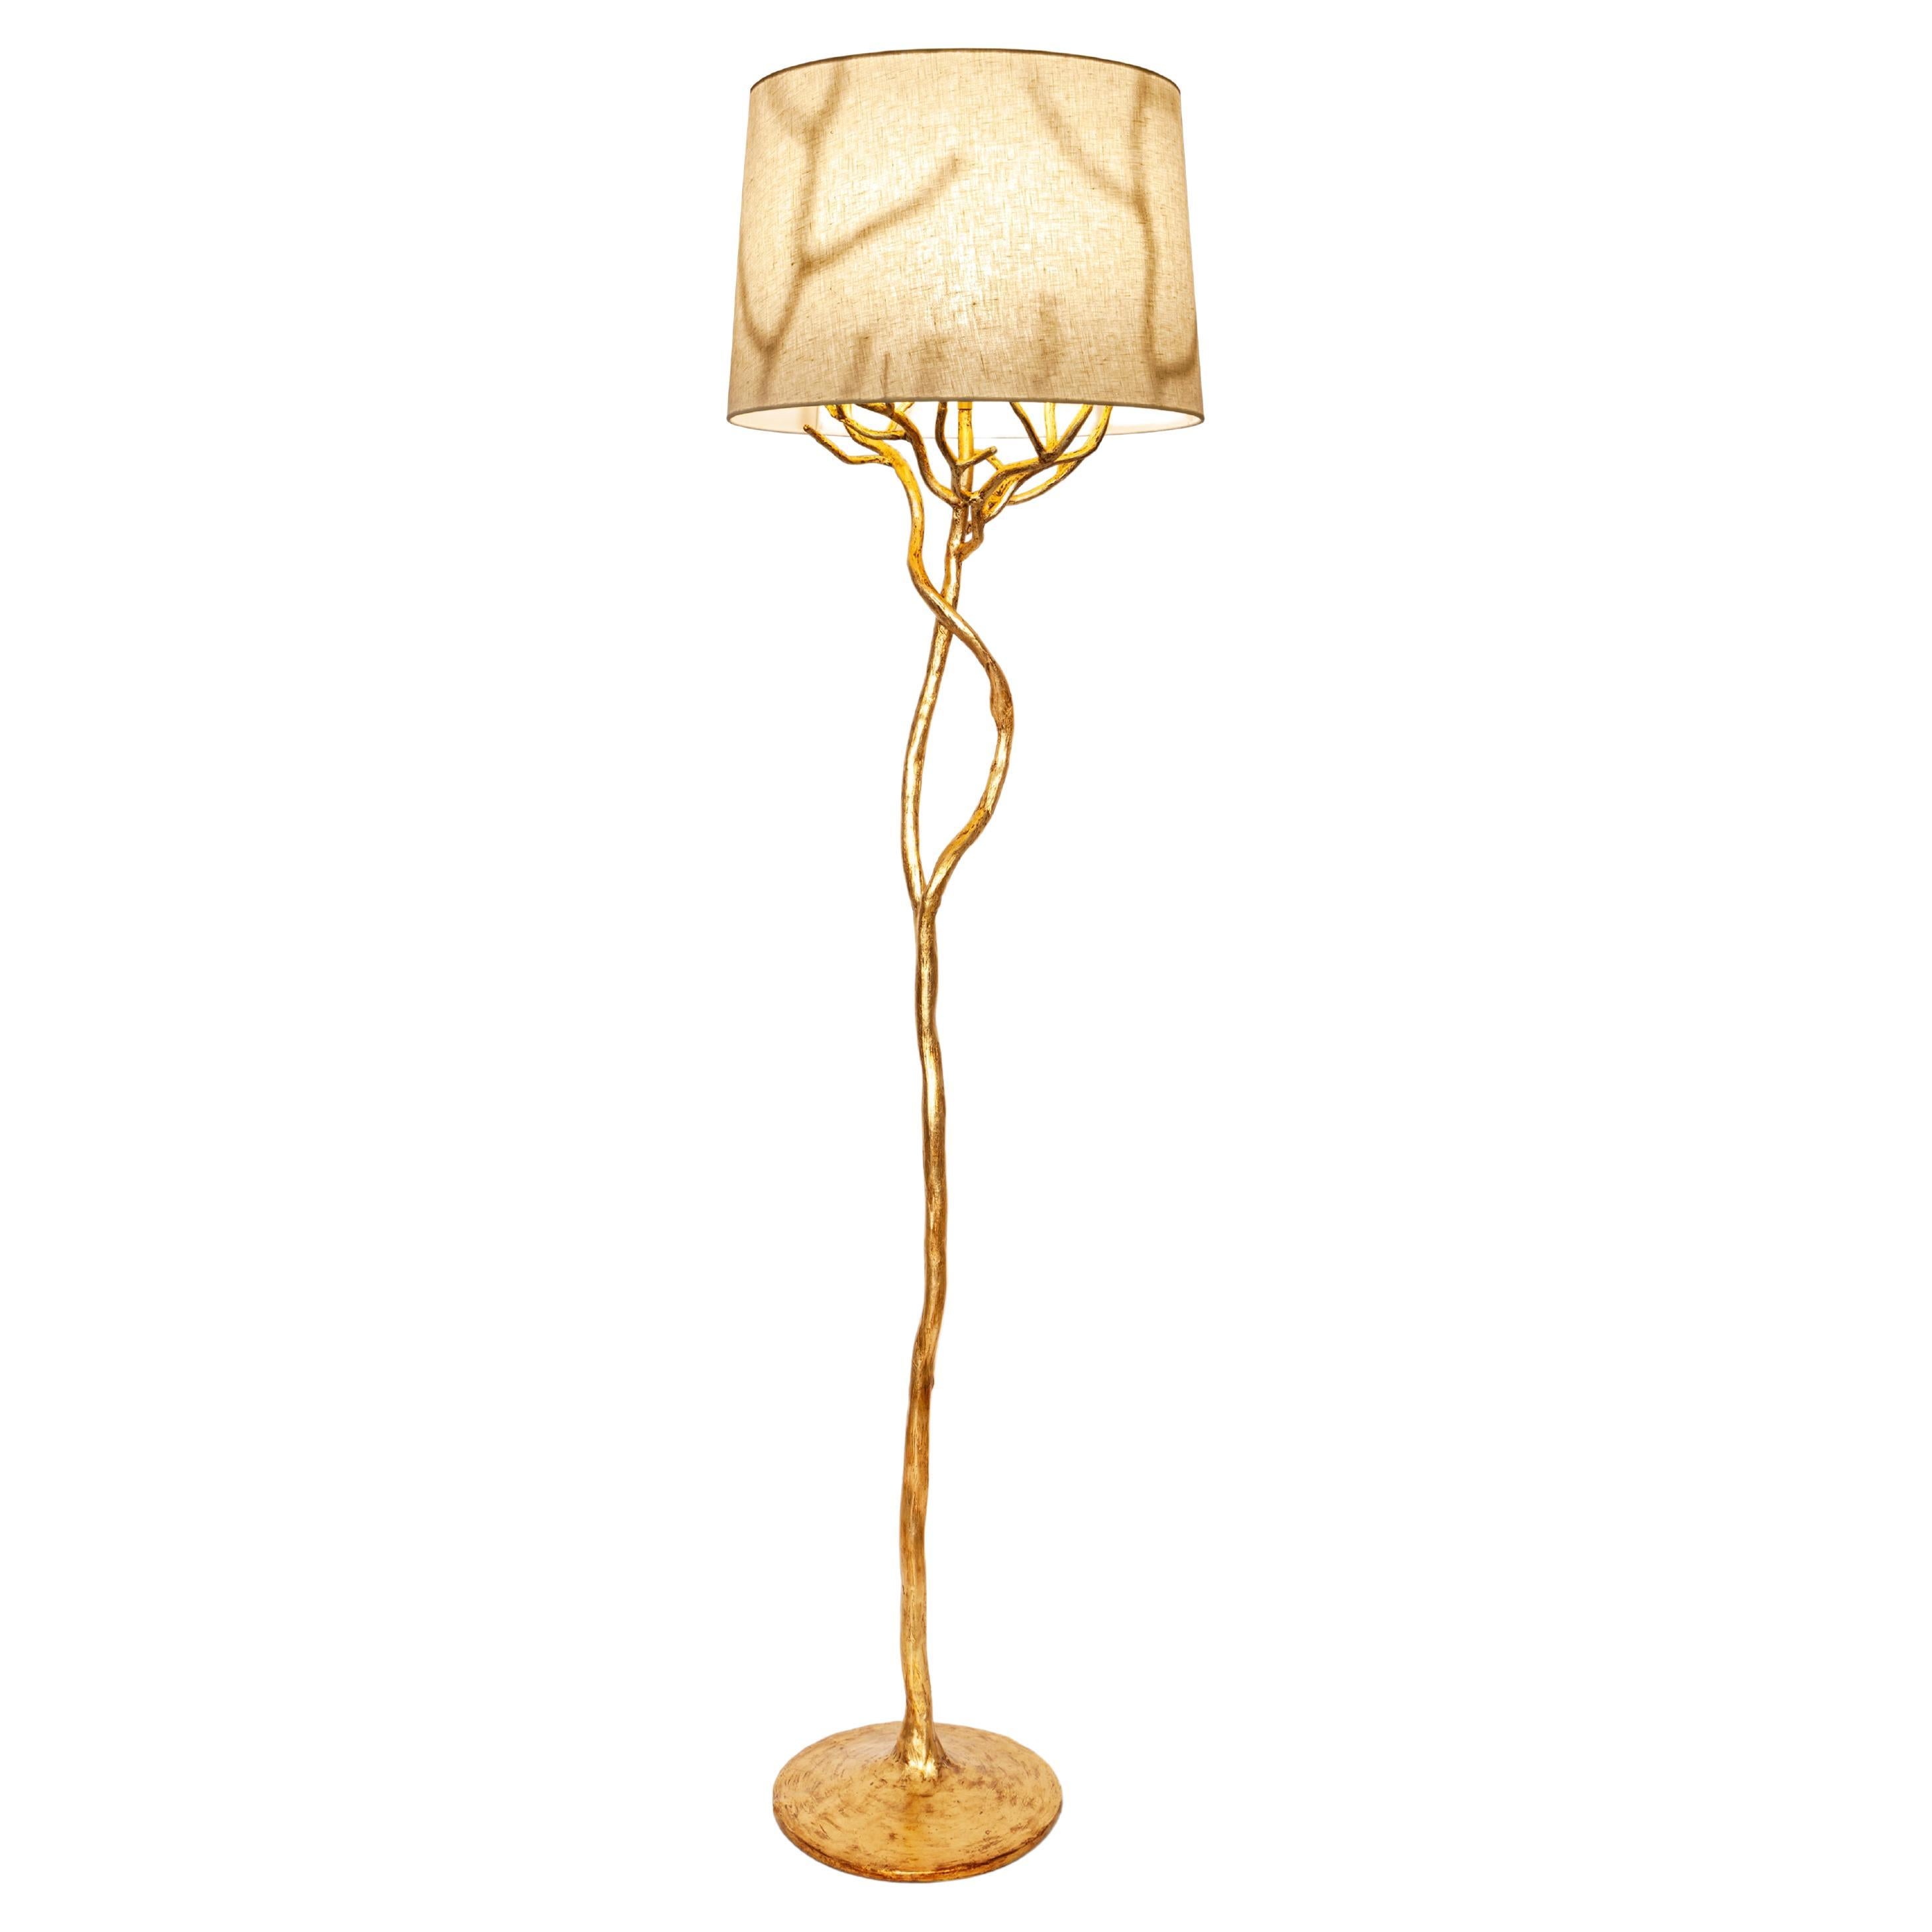 Organic Floor Lamp “Etna” in Antique Gold Finish, Benediko